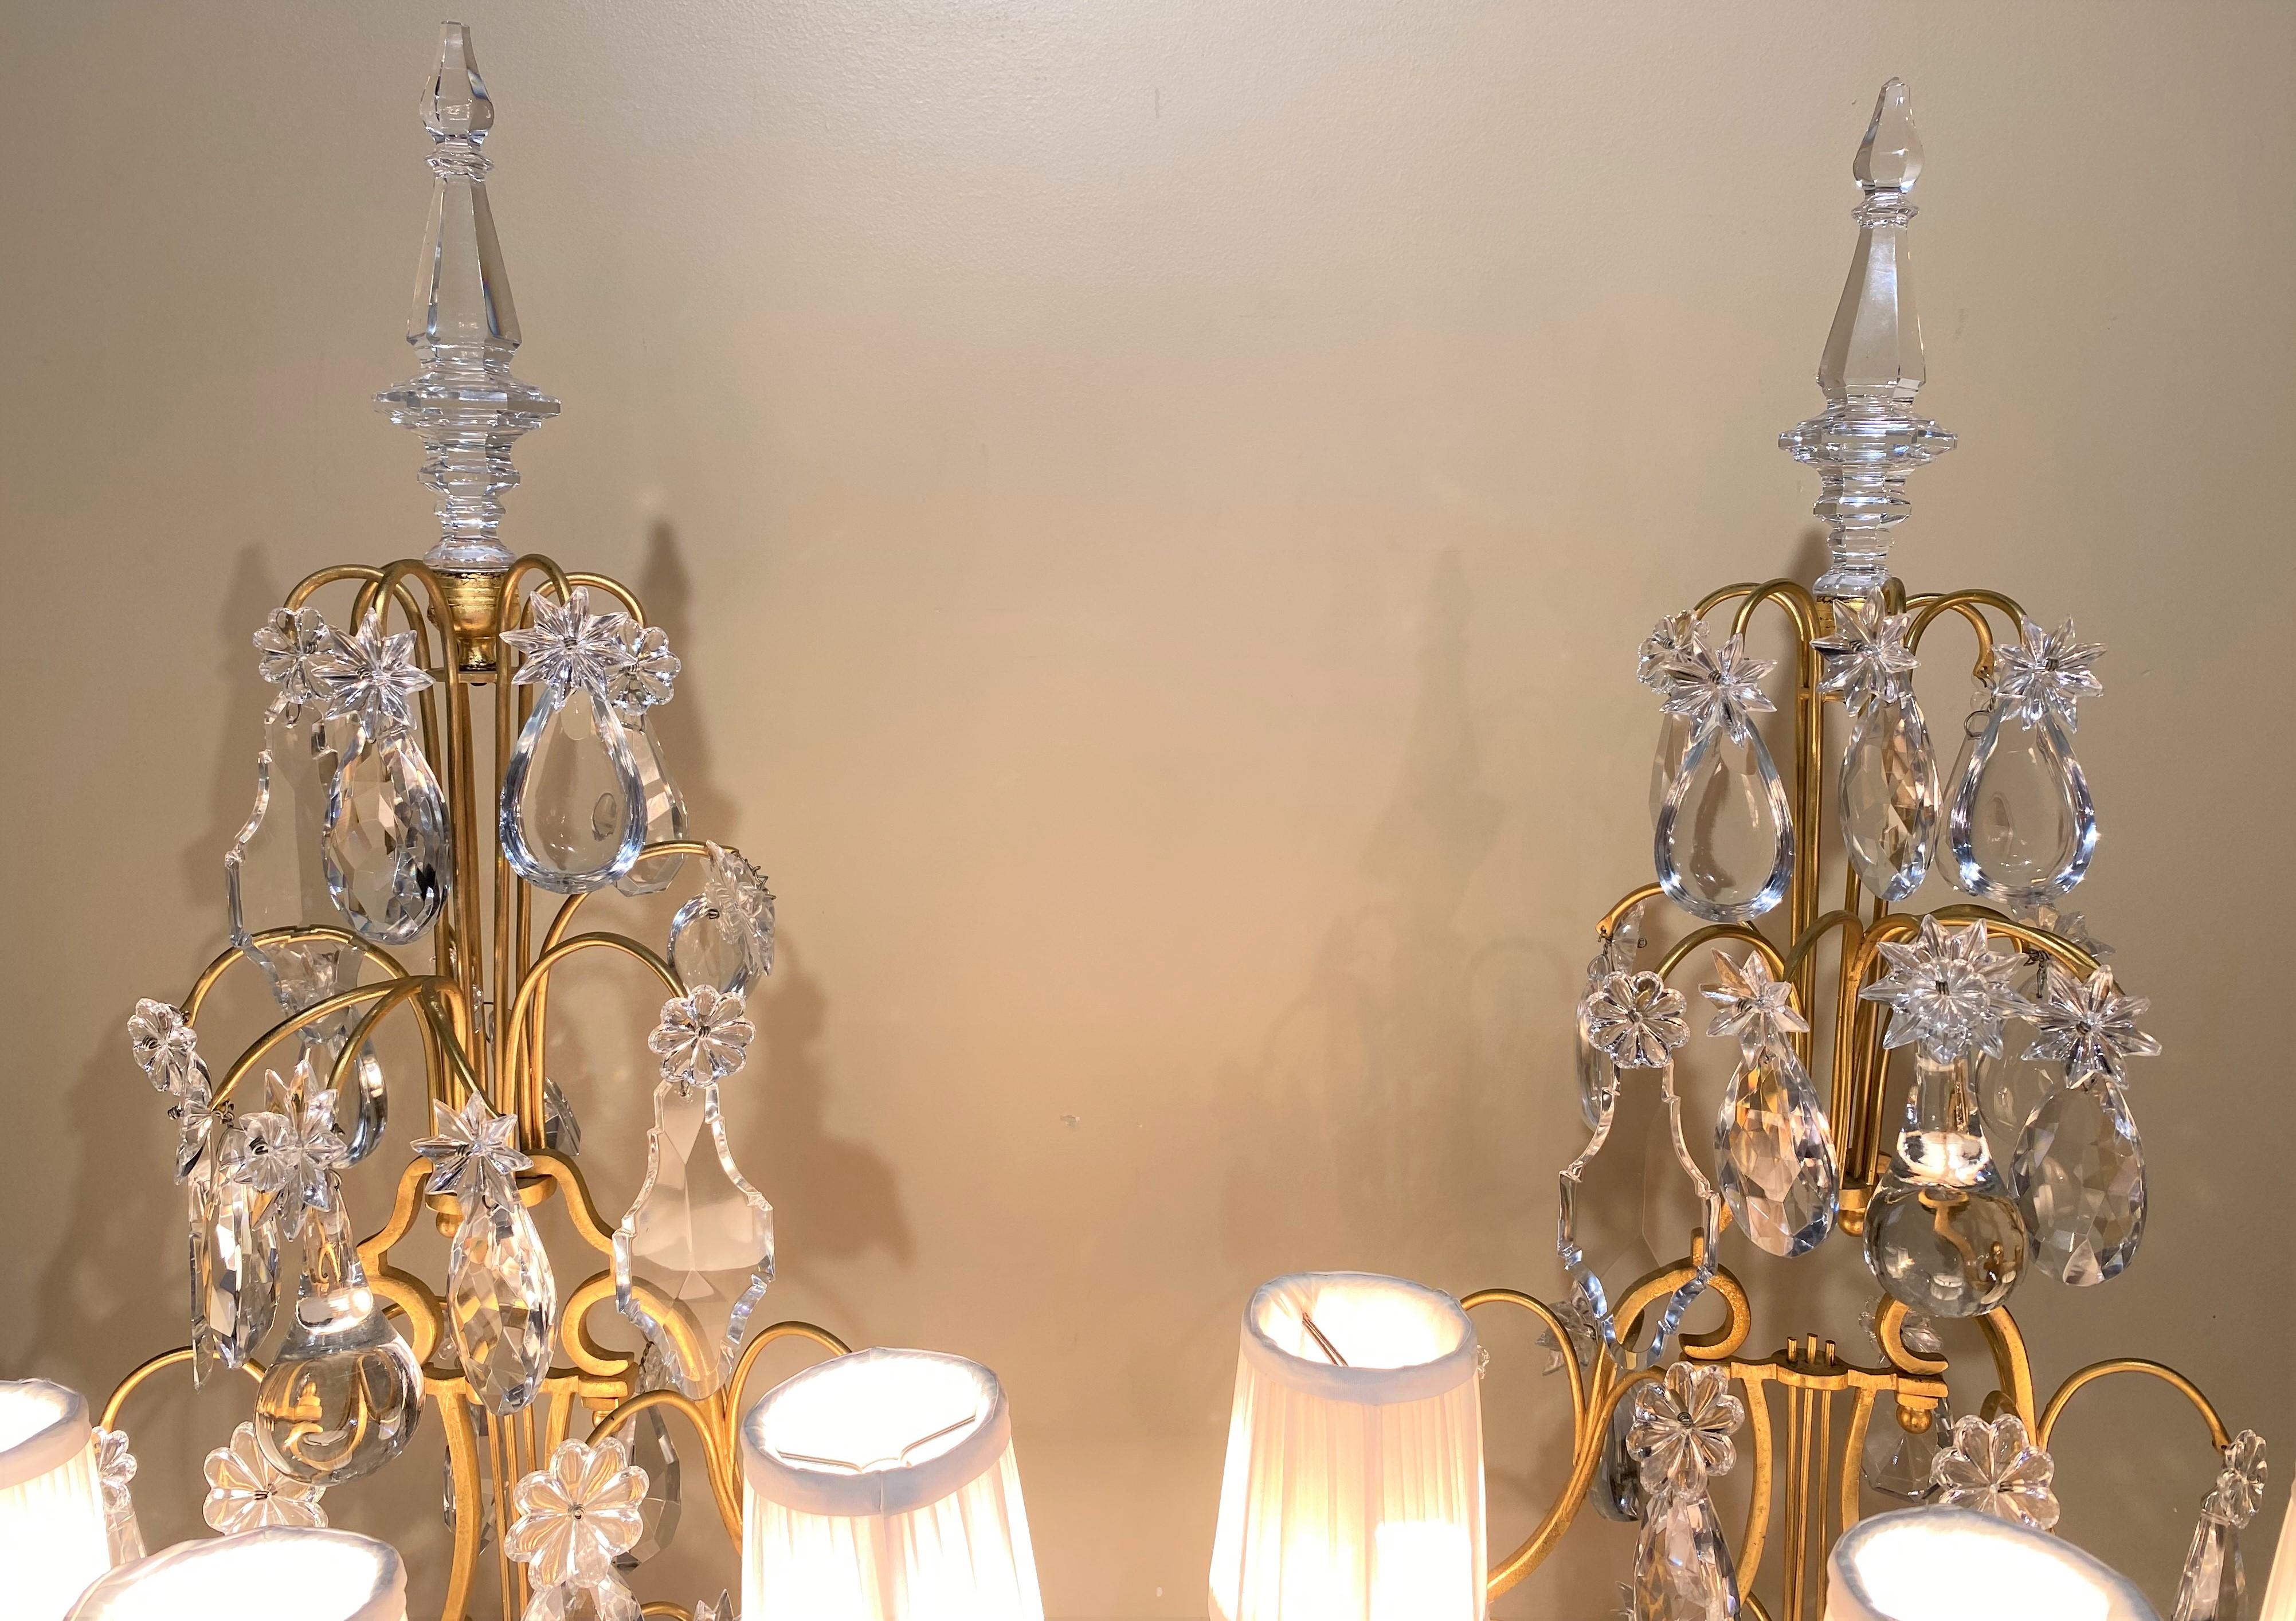 Ein wunderschönes Paar dreifach vergoldeter Leuchten im Louis XV-Stil mit bemalten Sockeln aus Kunstmarmor oder Malachitgrün, vier Etagen mit unterschiedlich geformten Prismen aus geschliffenem Kristallglas sowie spitz zulaufenden Glasendstücken.